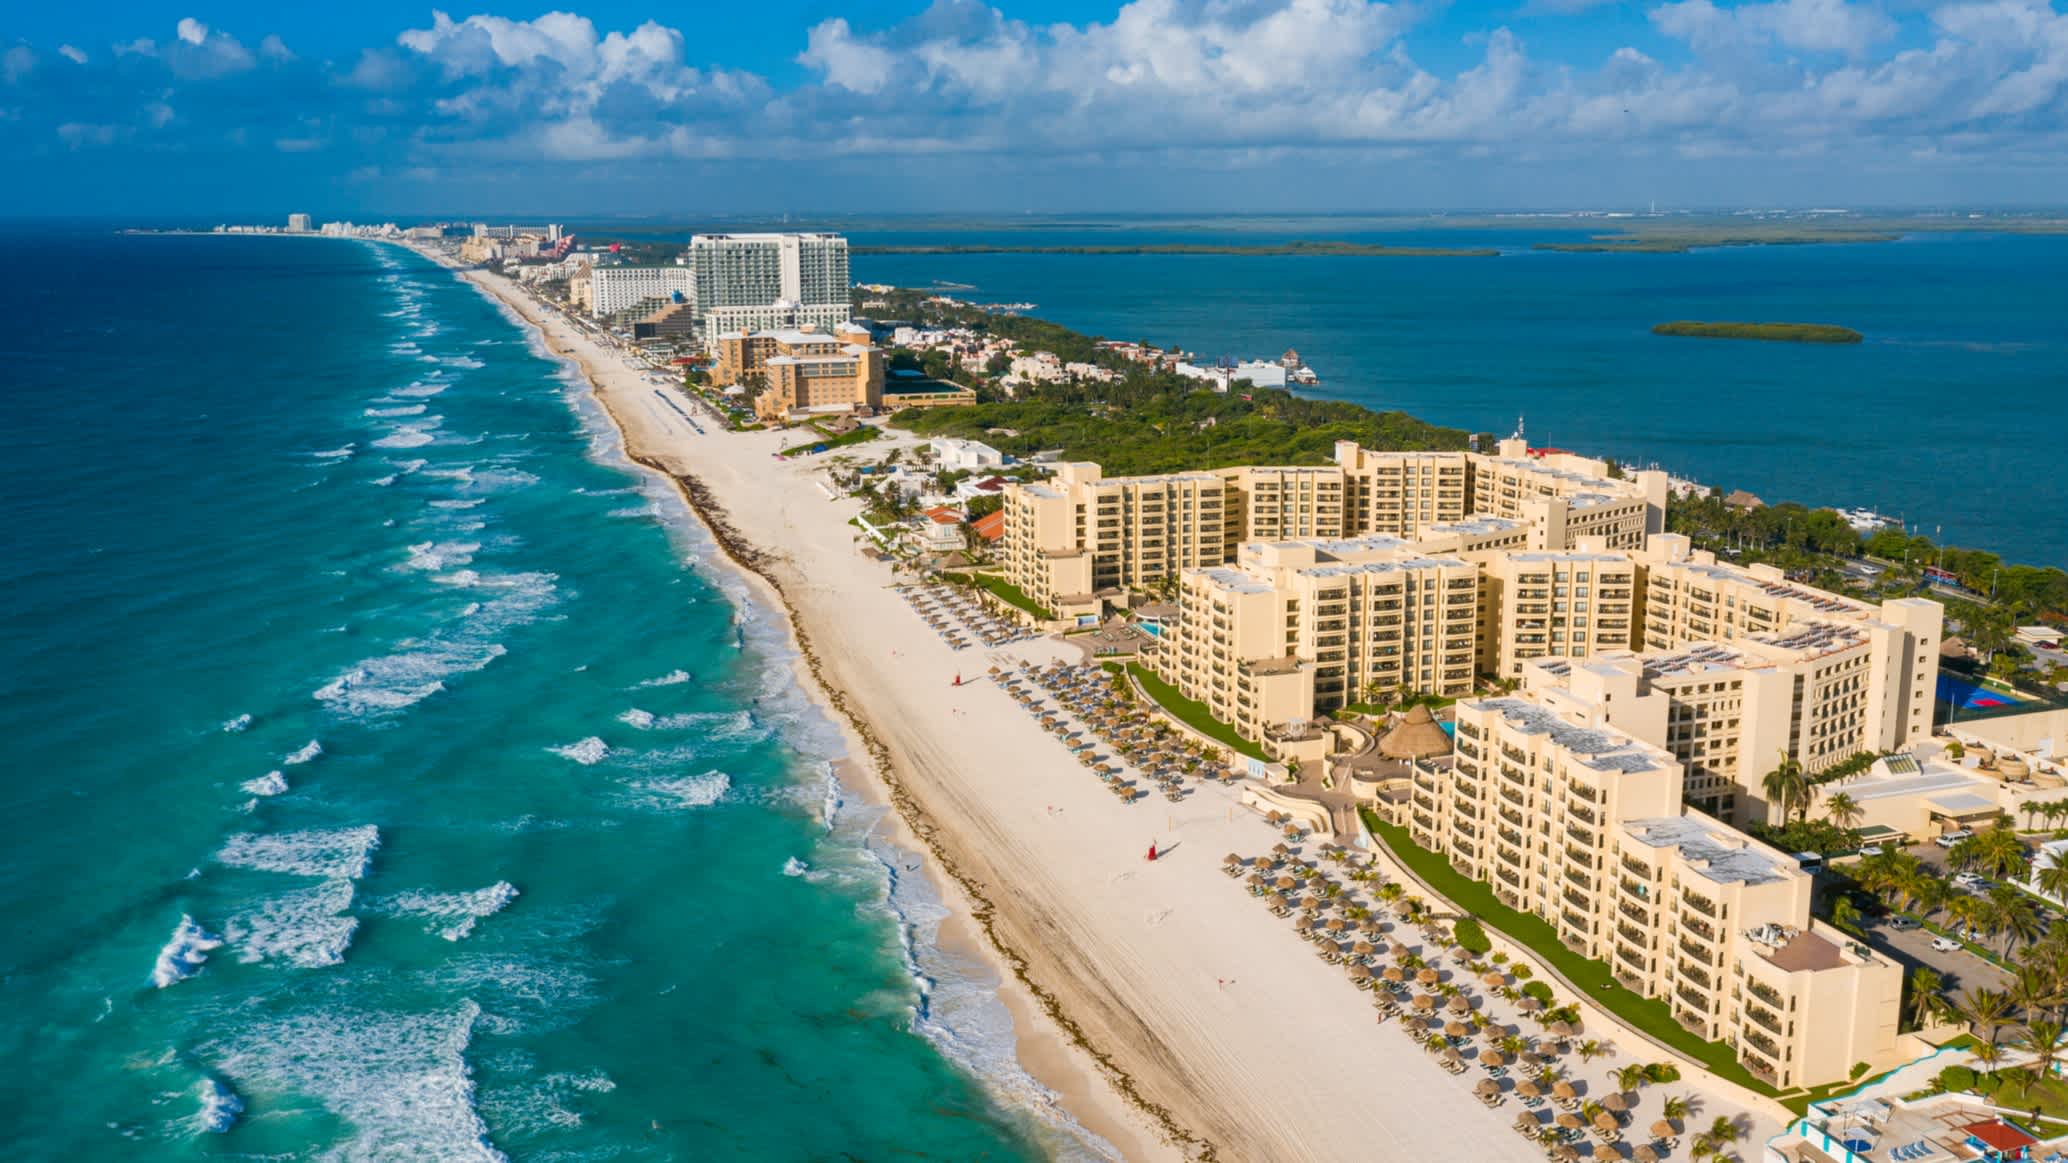 Vue aérienne de la plage de Cancun